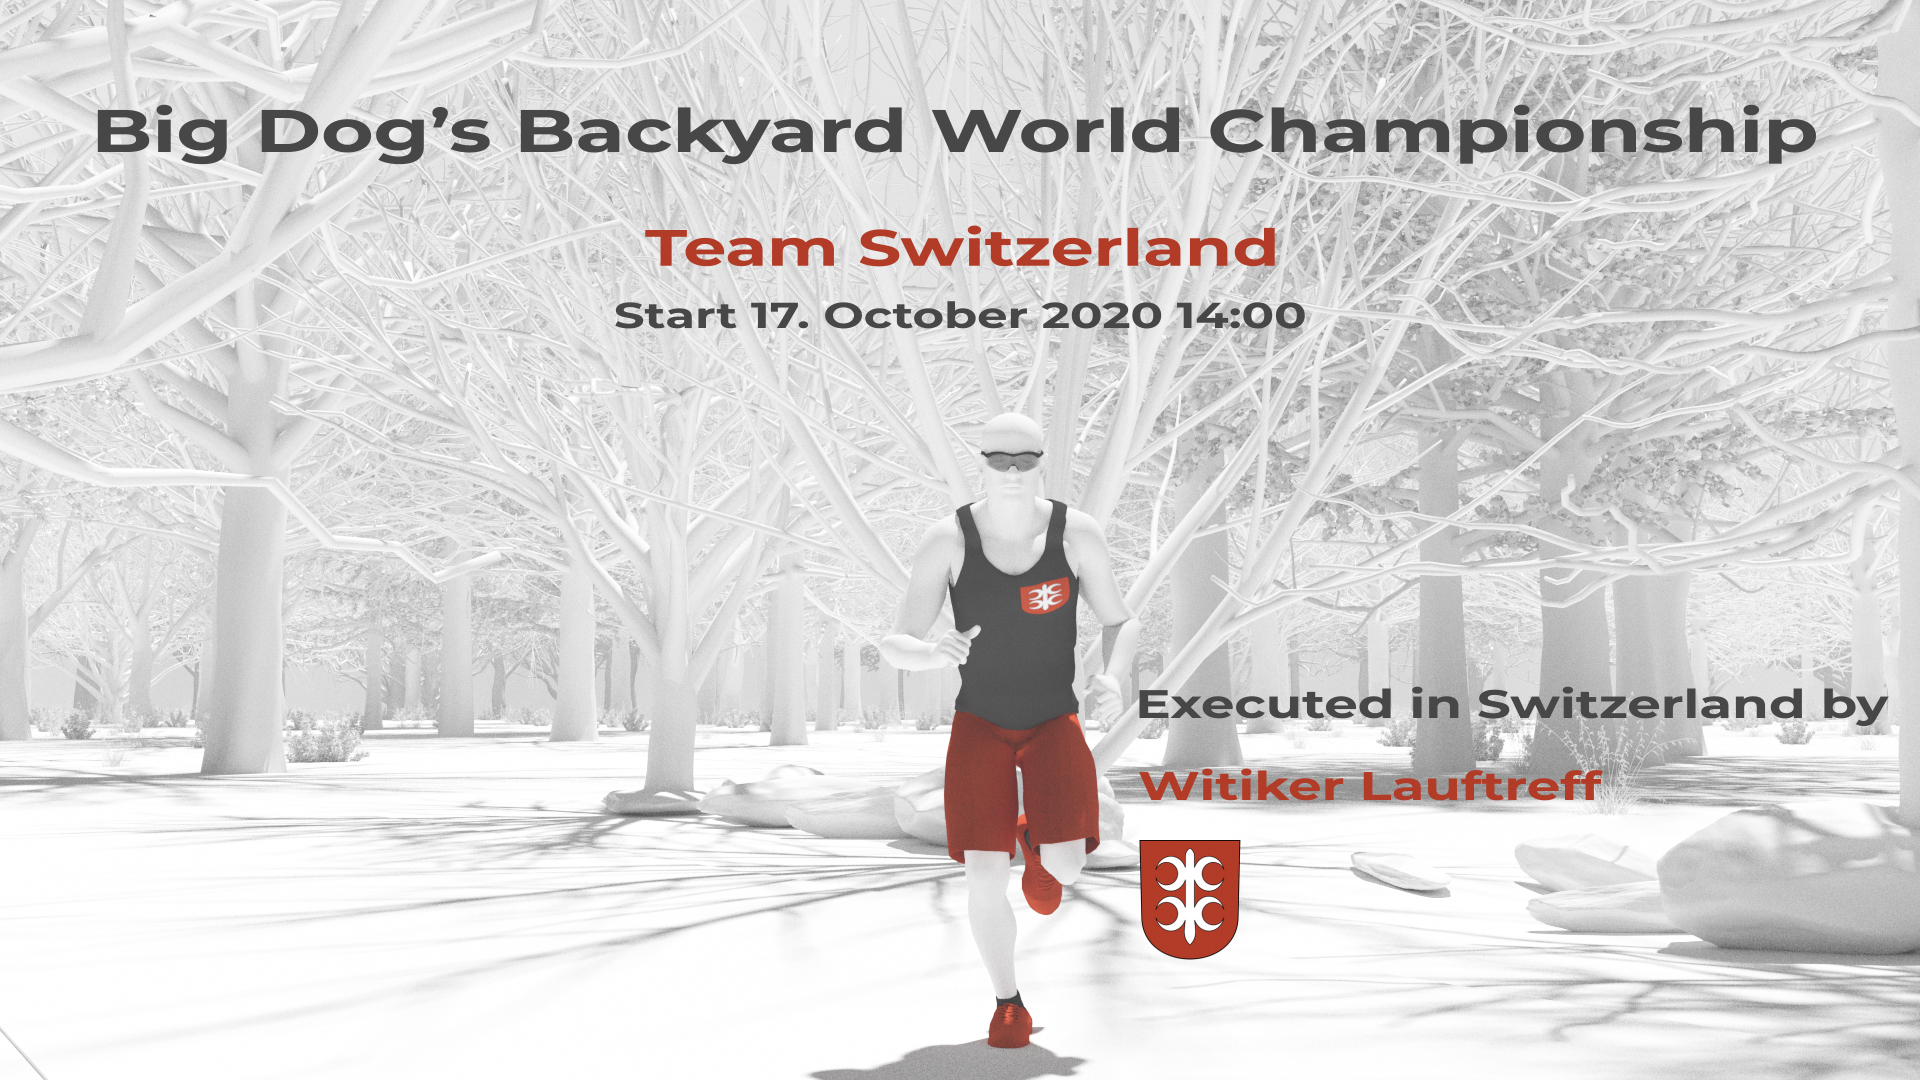 Backyard Ultra World Championship Team Switzerland